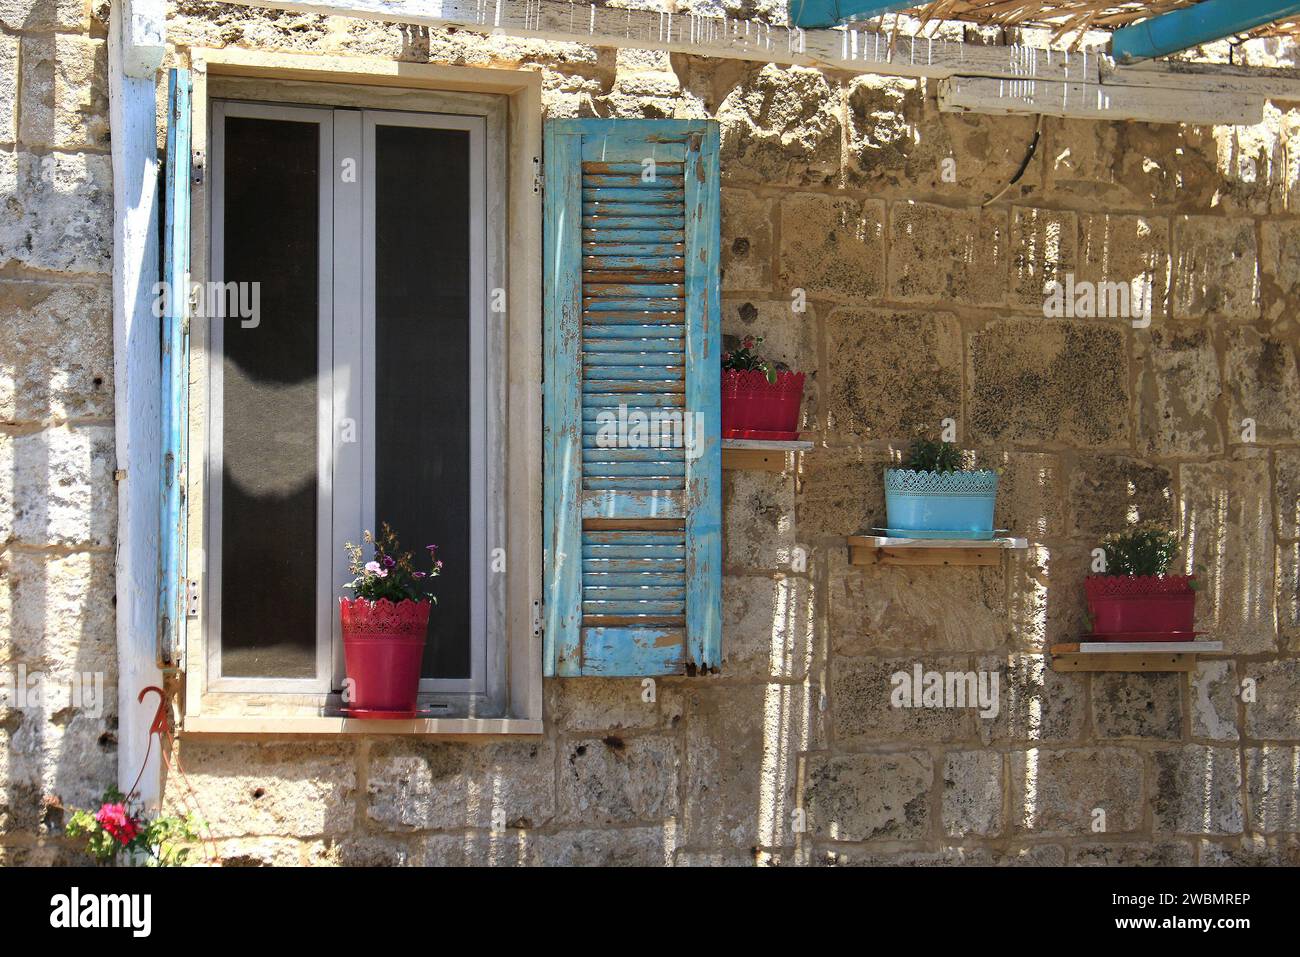 Una stonewall e finestra con persiane in legno blu decorate con vasi di fiori. Foto Stock